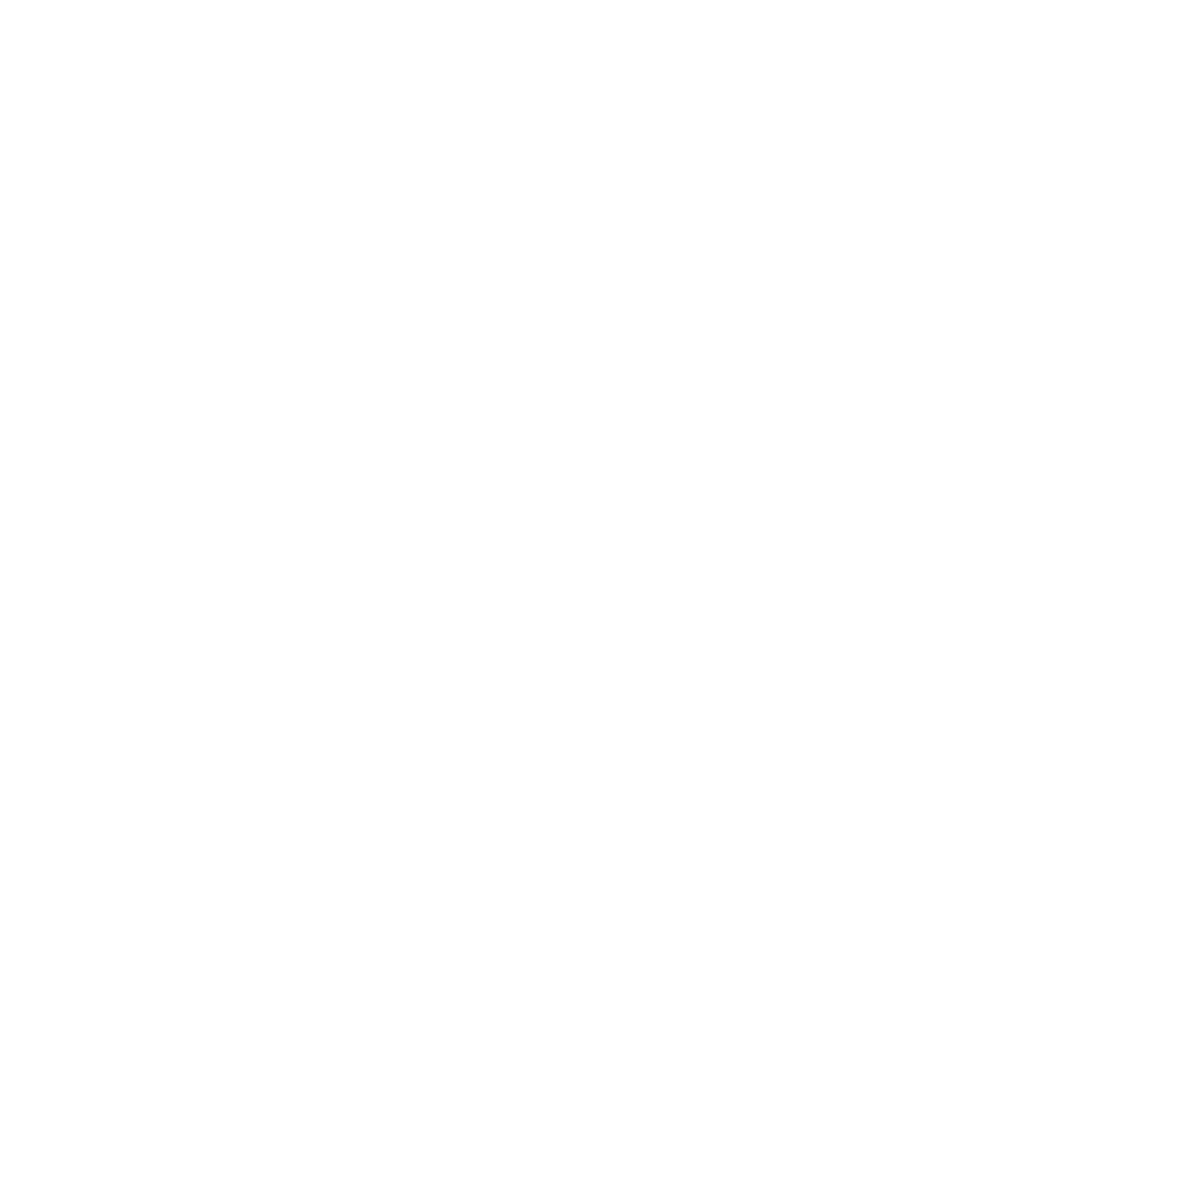 Smart TV OTT TV